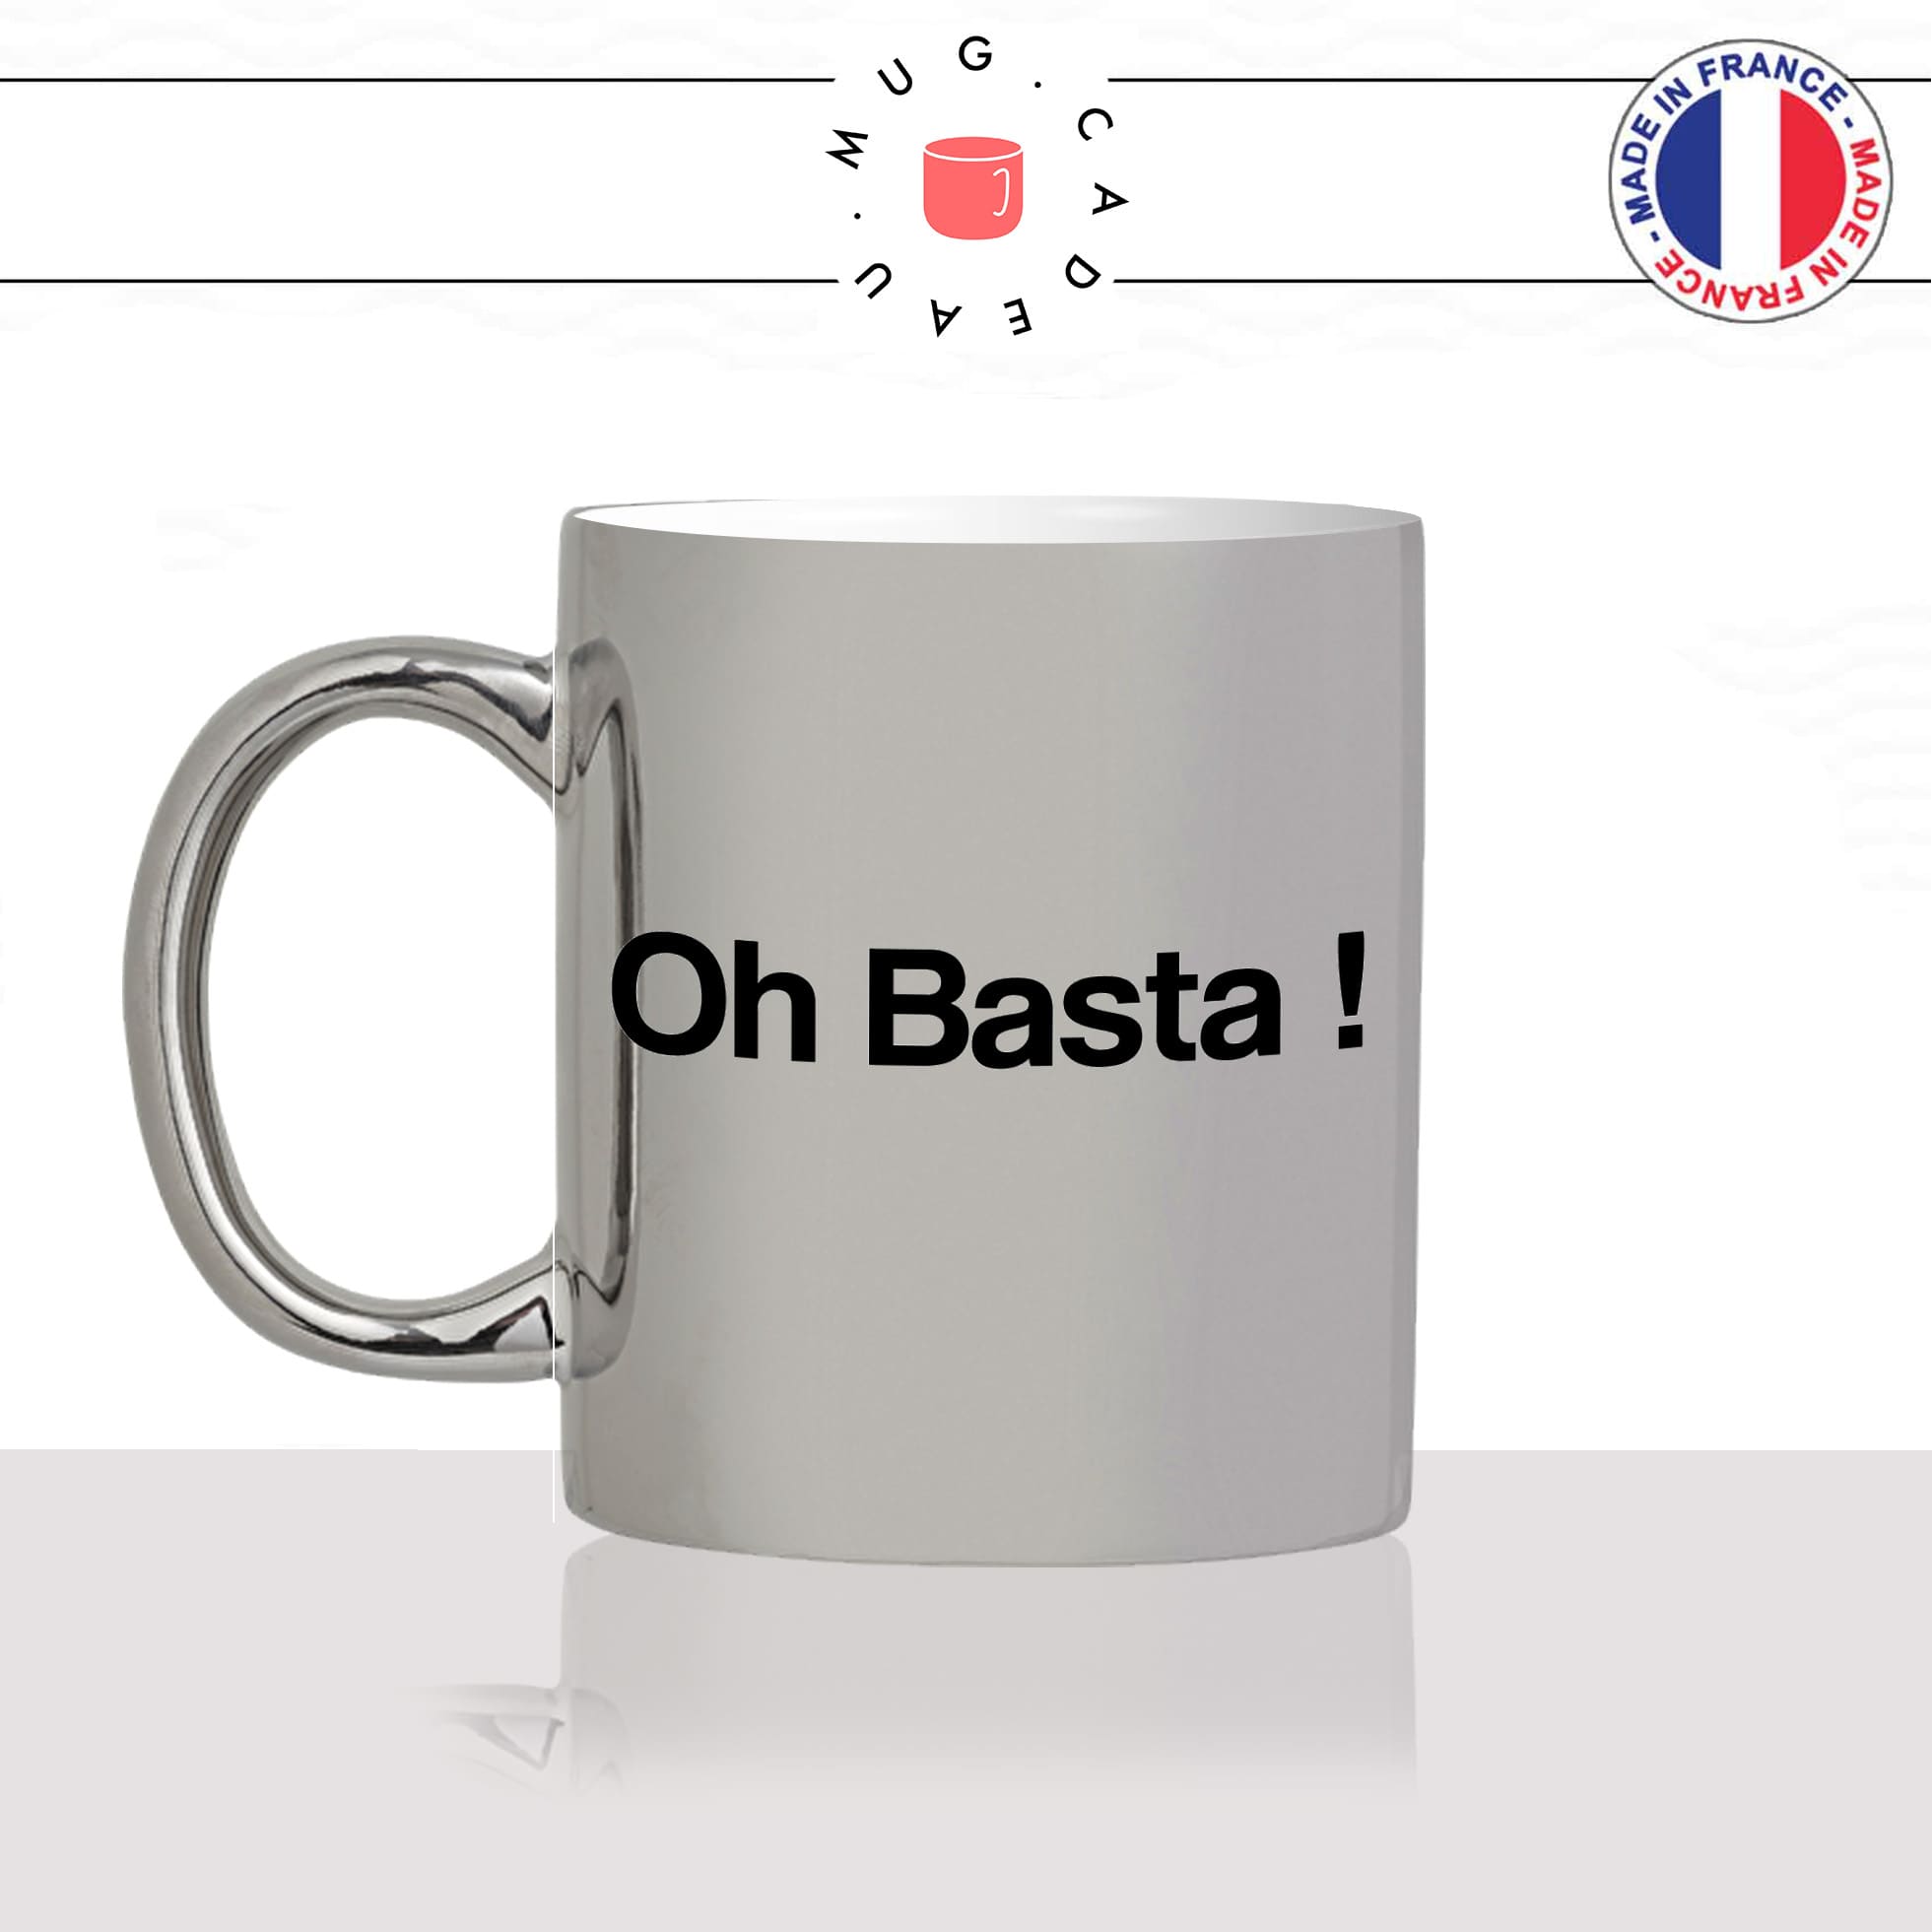 mug-tasse-argent-argenté-silver-oh-basta-stop-corse-corsica-patois-langue-ile-de-beauté-france-francais-idée-cadeau-fun-cool-café-thé